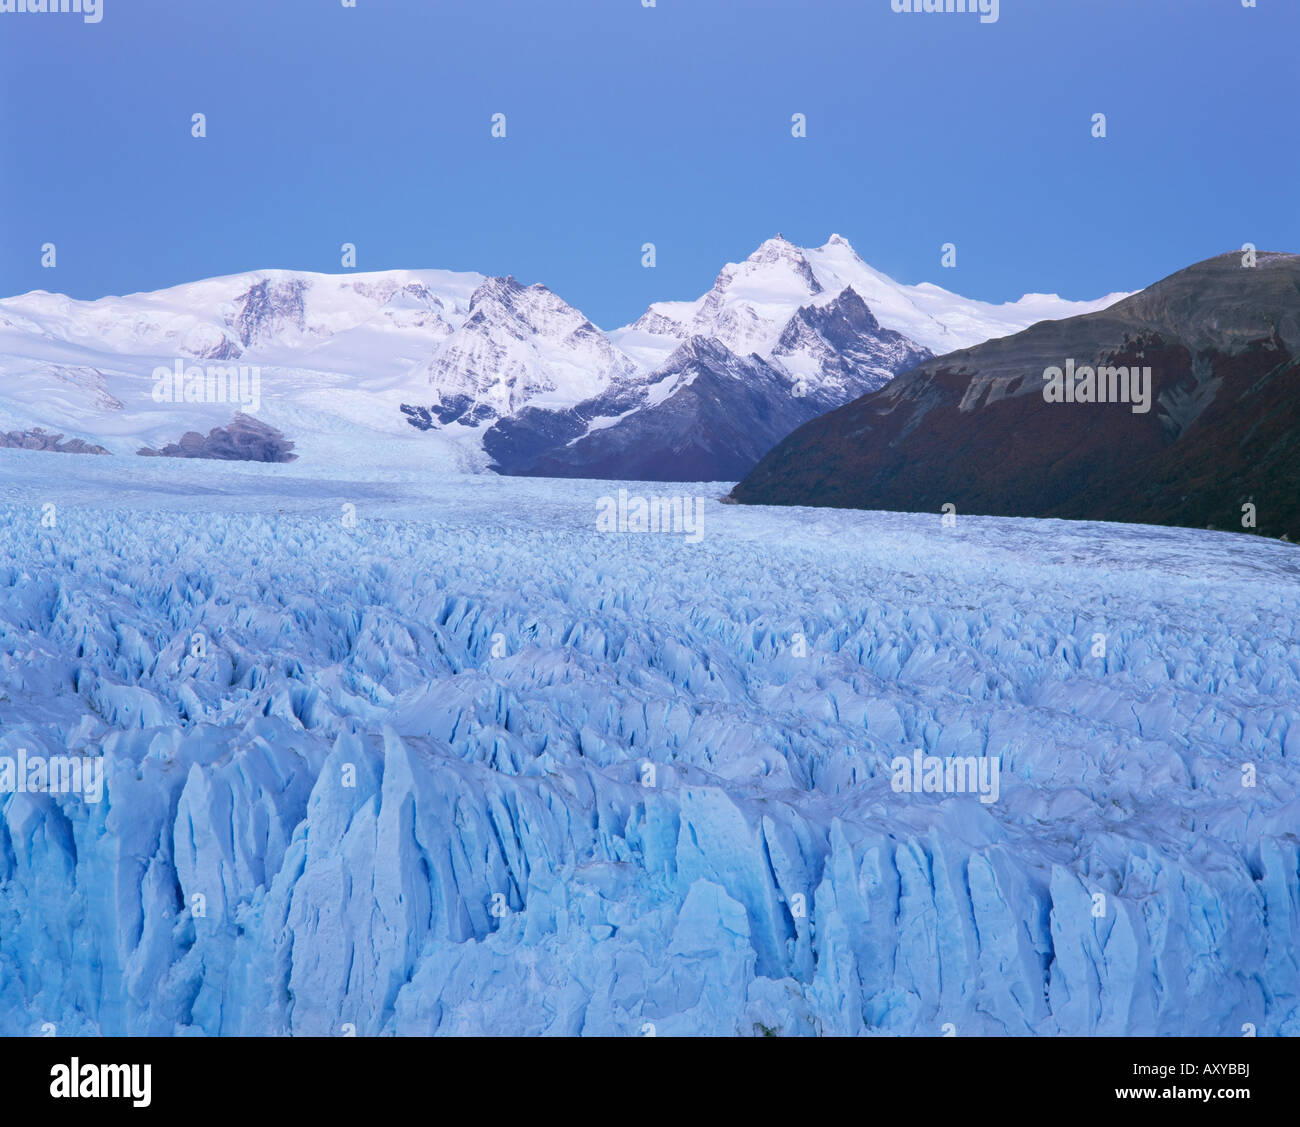 Perito Moreno glacier and Andes mountains, Parque Nacional Los Glaciares, UNESCO World Heritage Site, El Calafate, Argentina Stock Photo